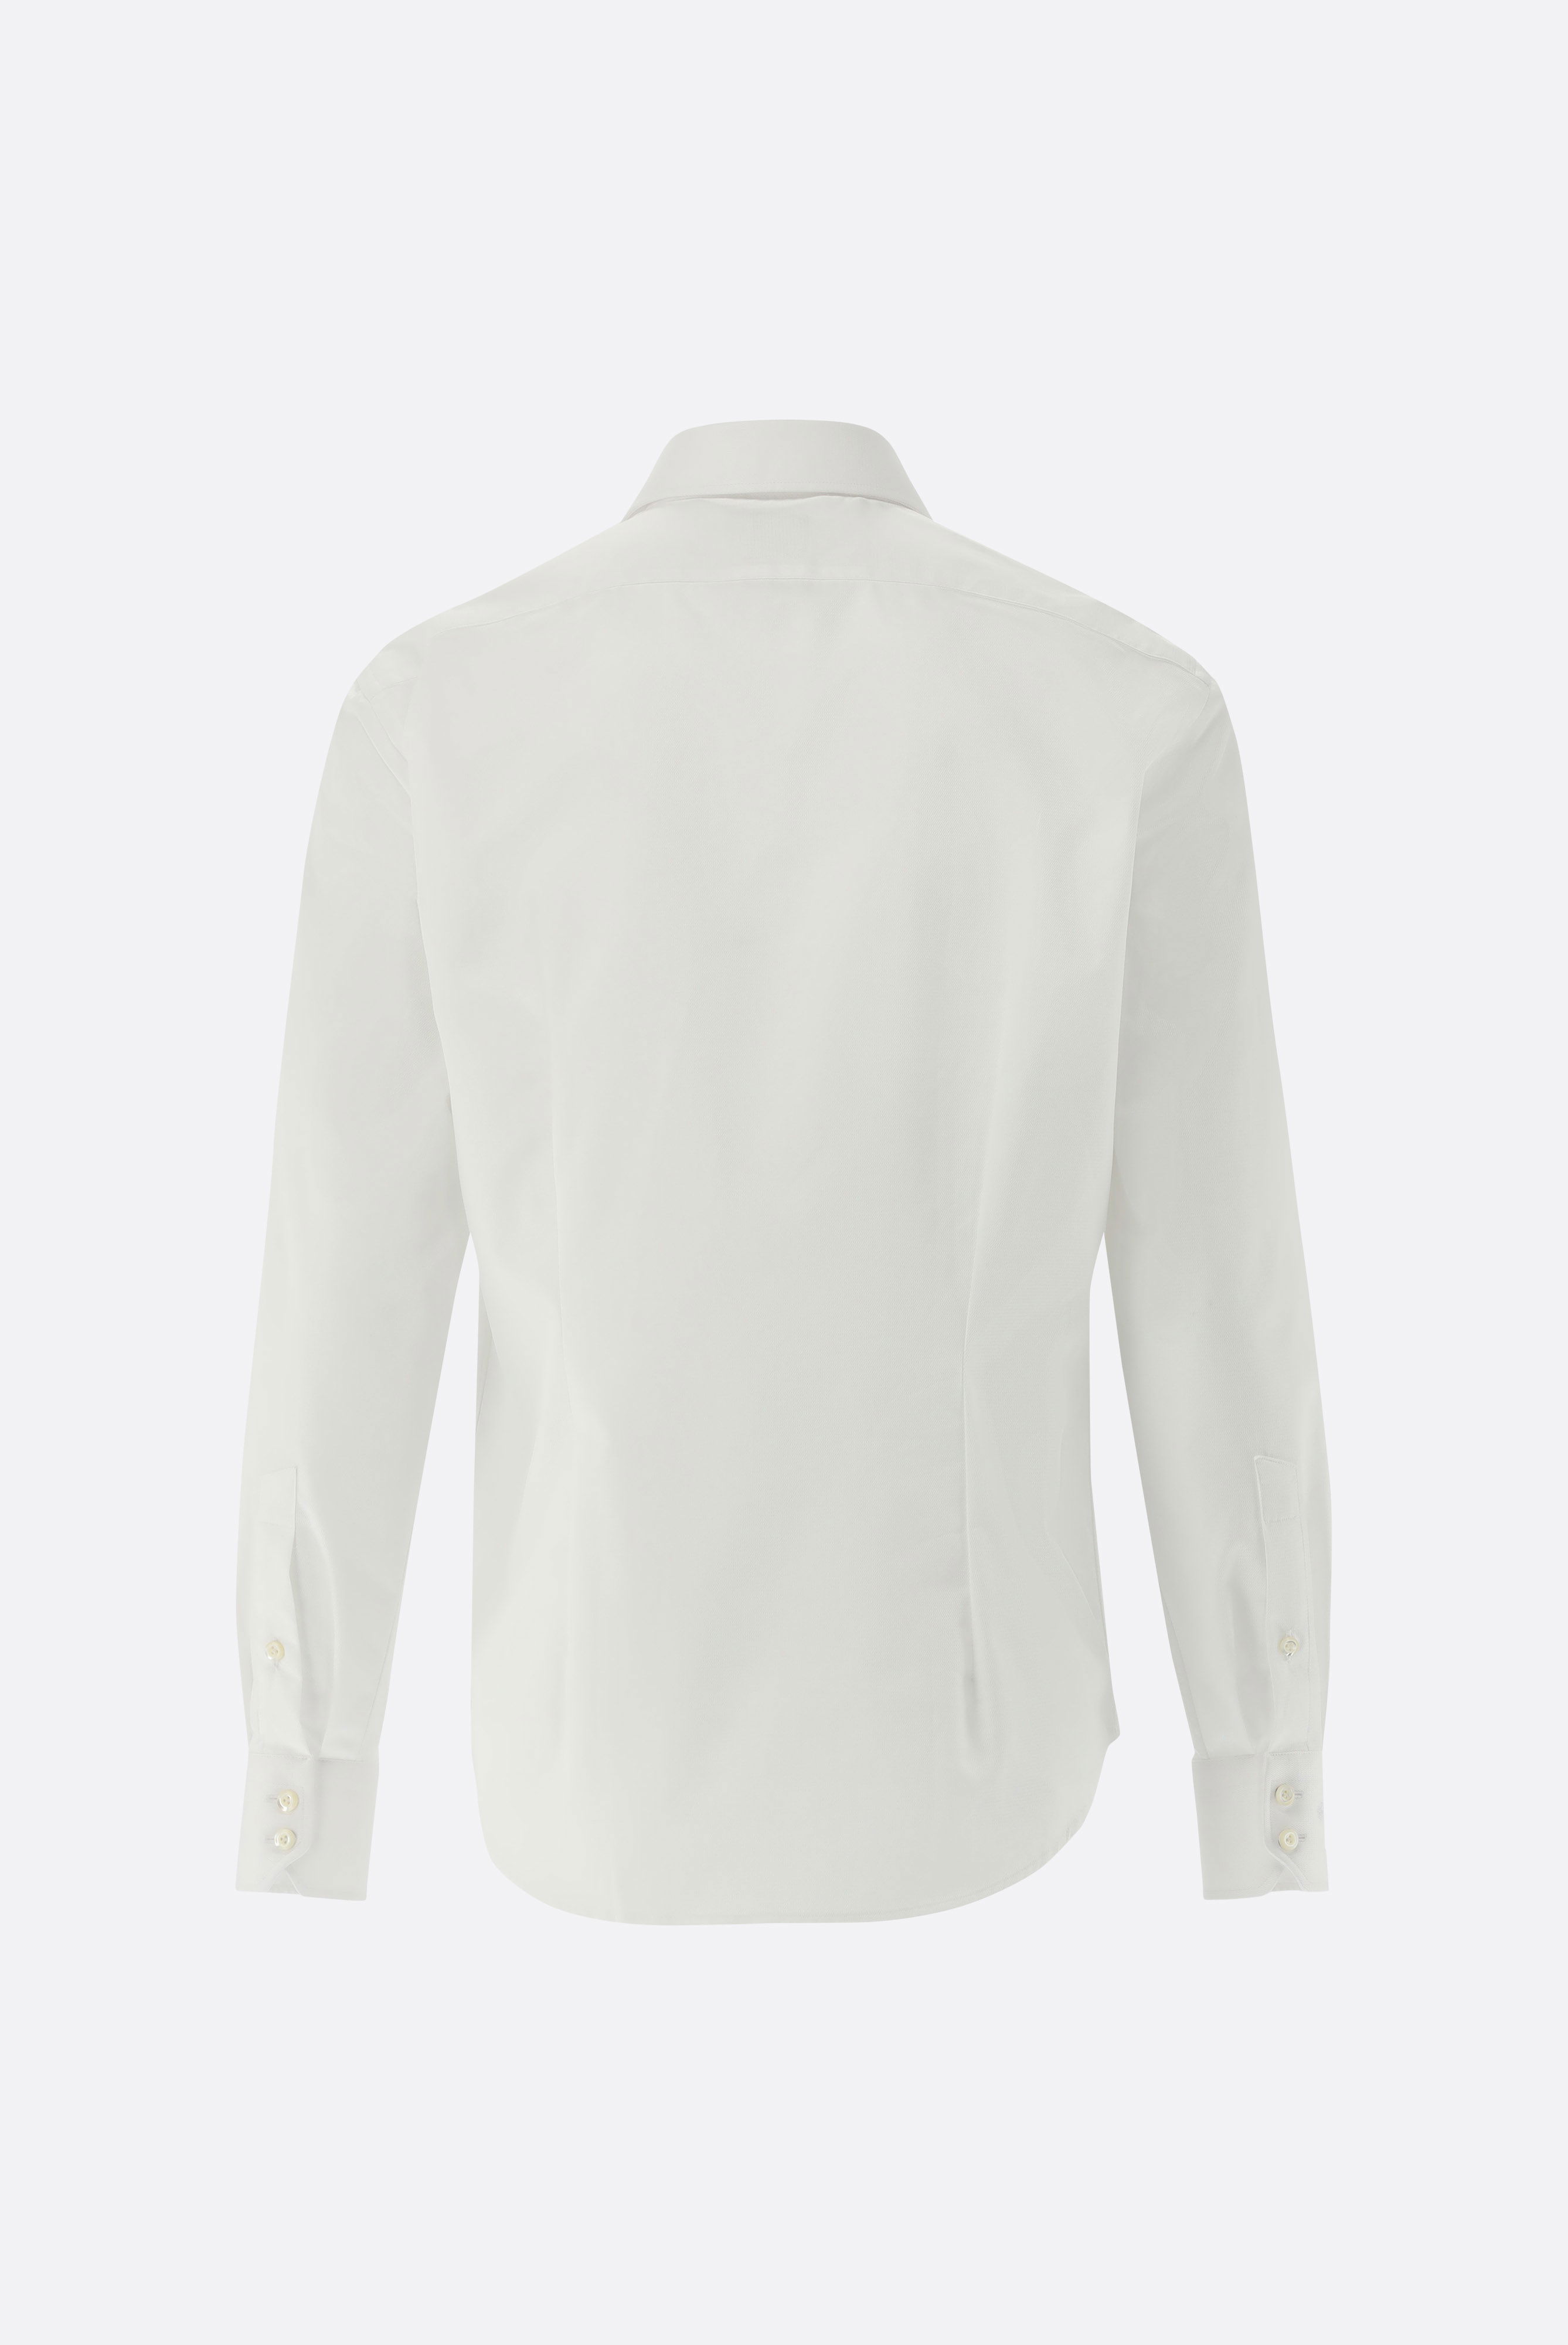 Bügelleichte Hemden+Bügelfreies Twill Hemd mit Struktur Tailor Fit+20.2020.BQ.150301.000.38